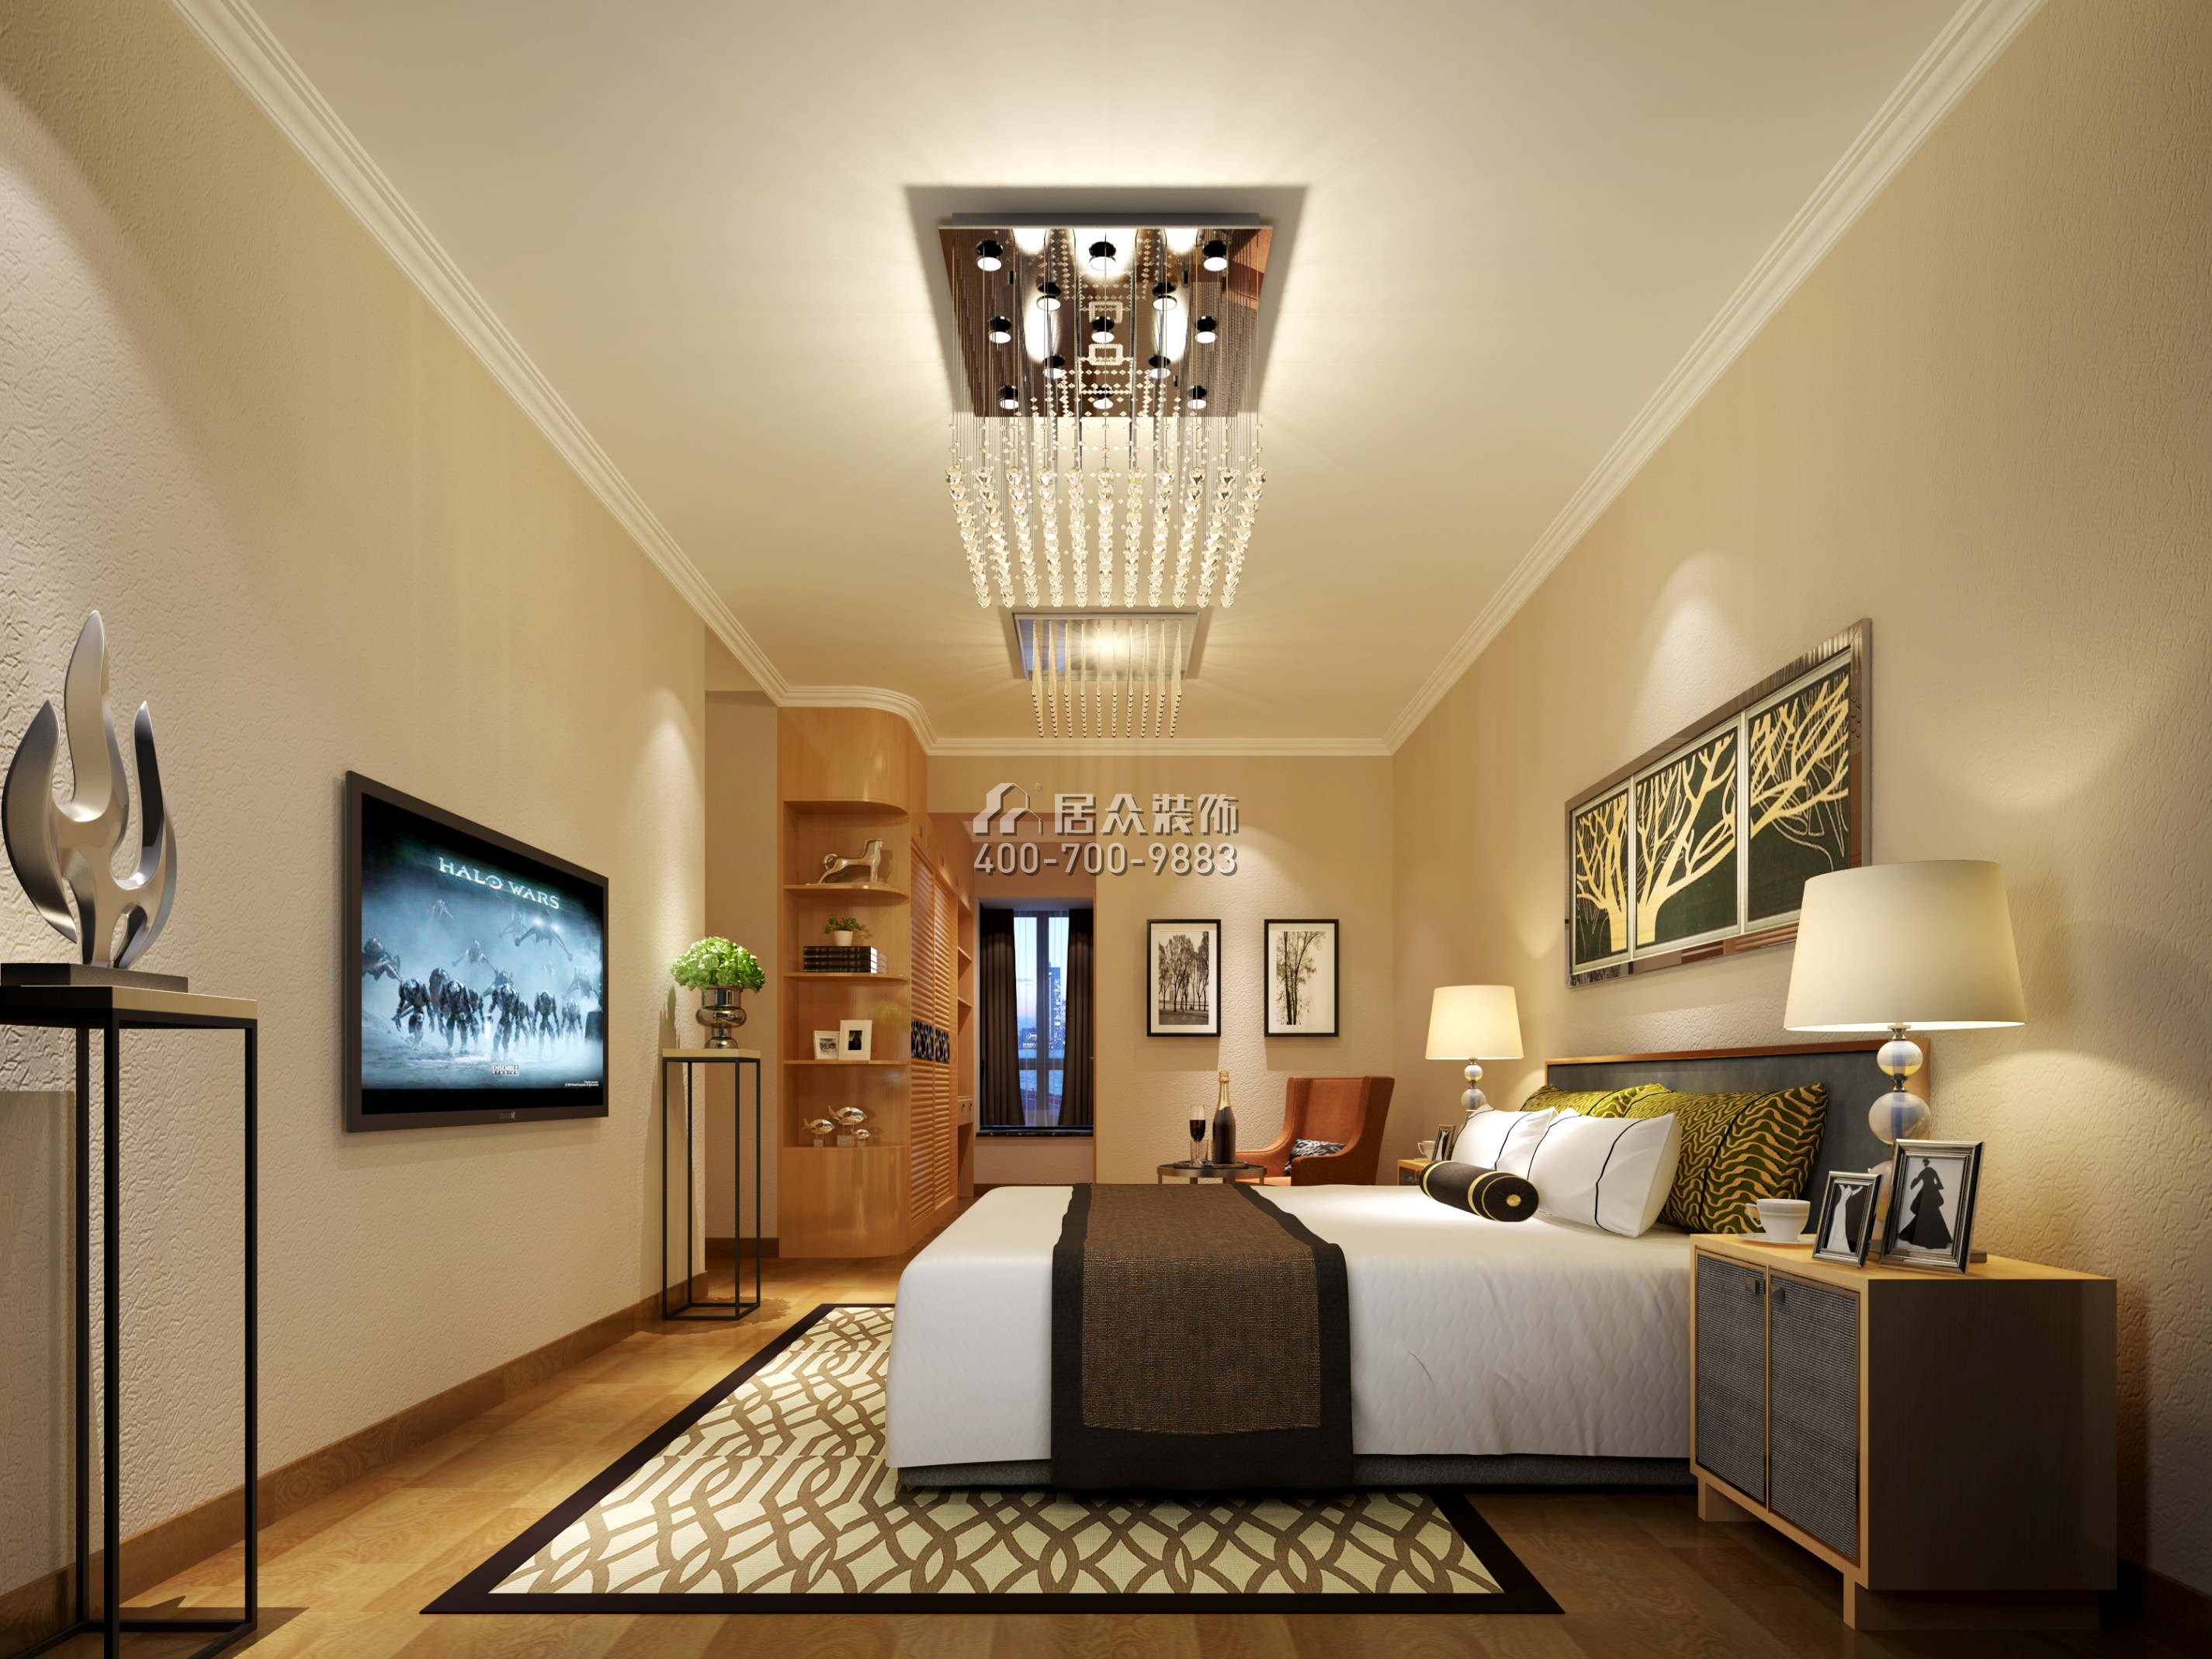 翠湖豪苑143平方米現代簡約風格平層戶型臥室裝修效果圖